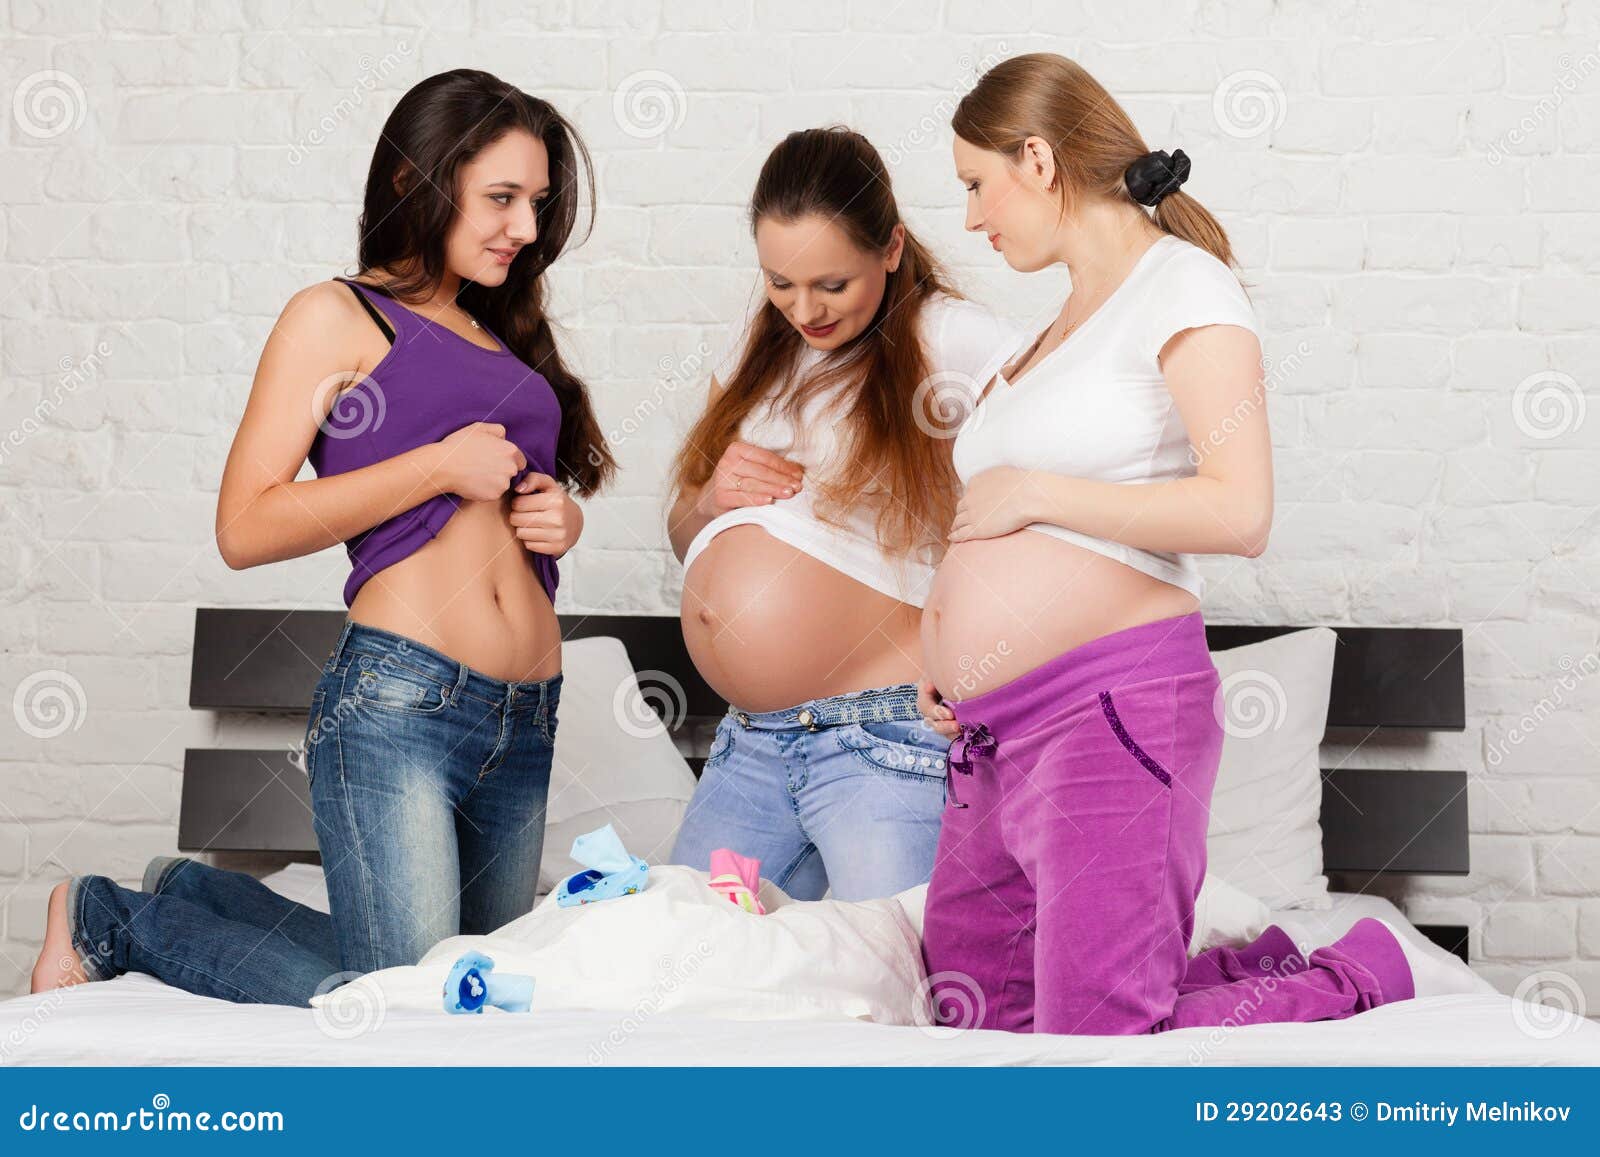 belwar dissengulp recommends Pregnant Girlfriend Pics